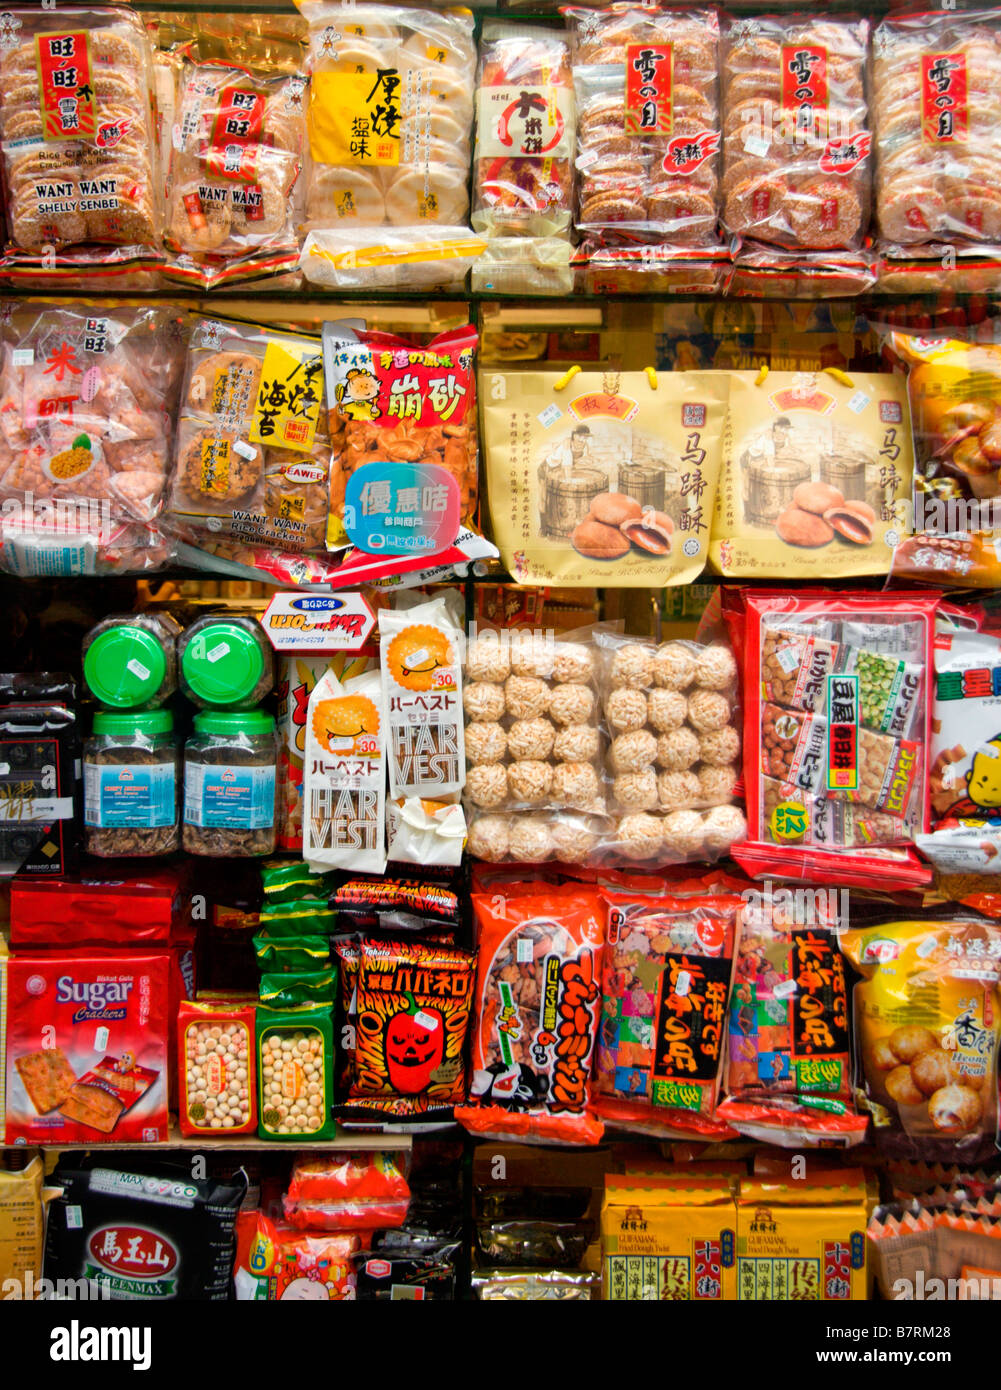 Tienda de comida china fotografías e imágenes alta resolución - Alamy